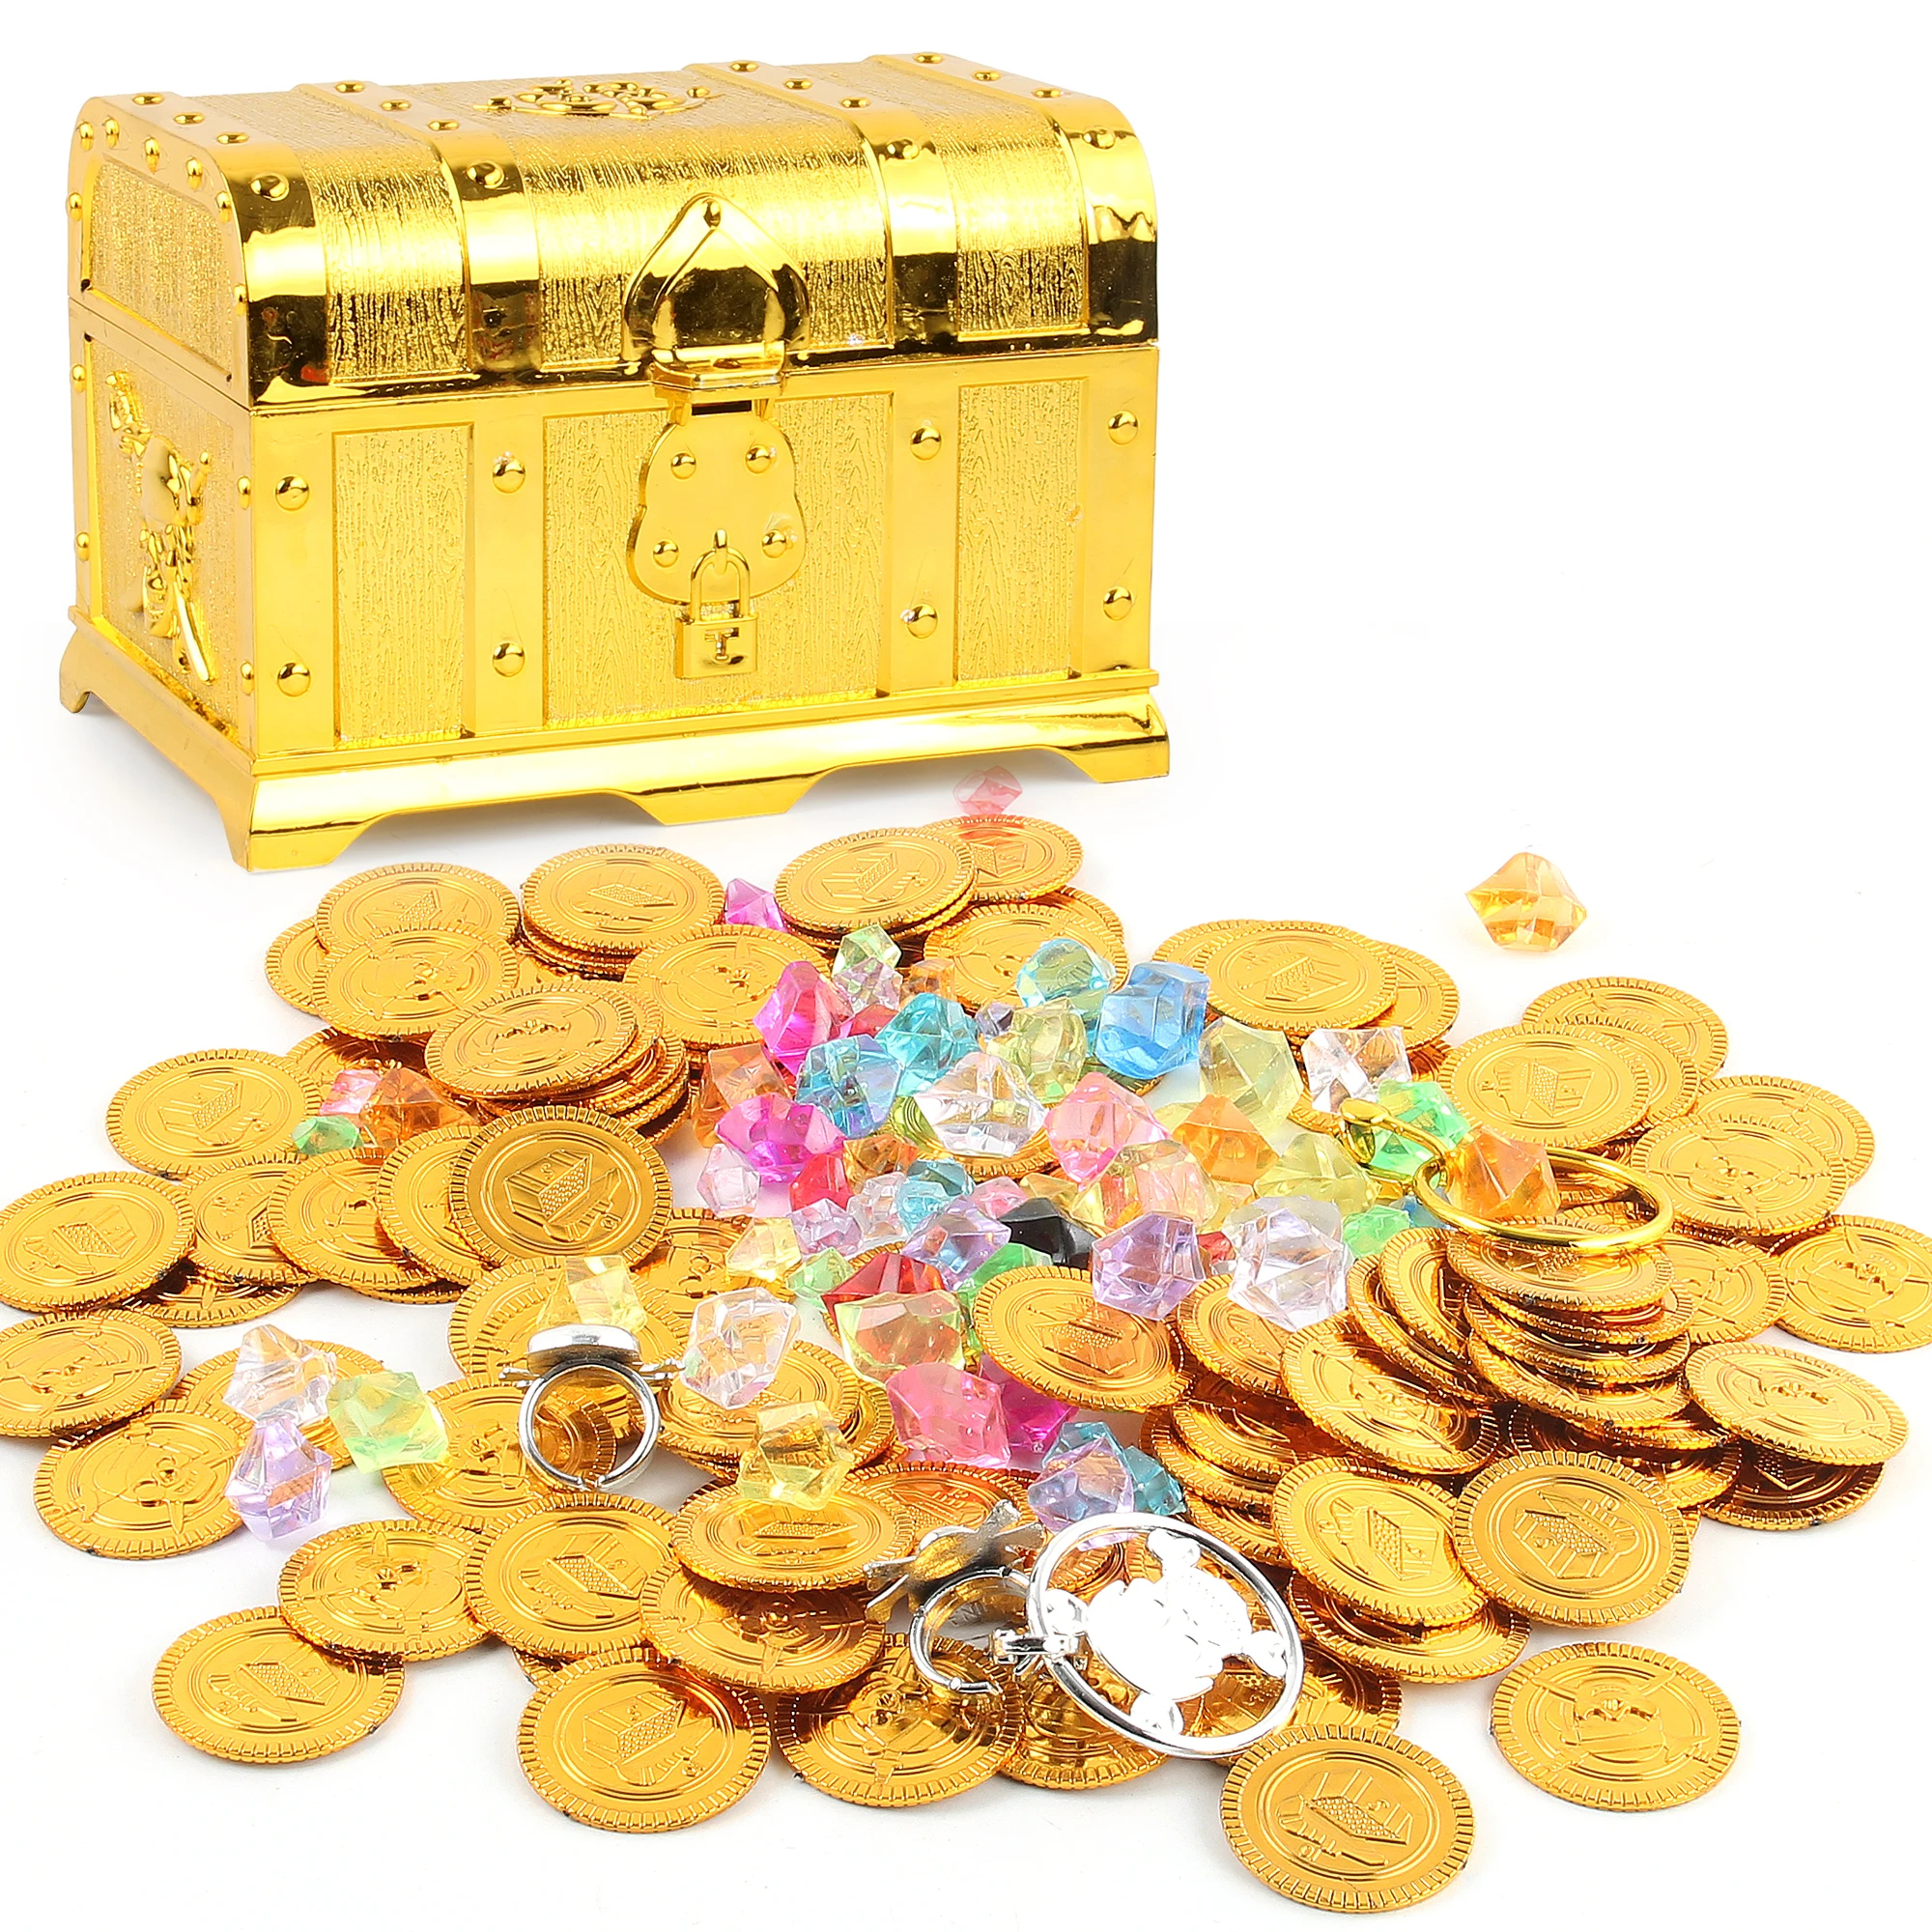 Пластмасов Pirate Ковчег Със Съкровища Златна Монета Скъпоценен Камък Организатор На Съхранение В Кутия, Сандък Със Съкровище Подаръци За Детски Рожден Ден Украса Играчки